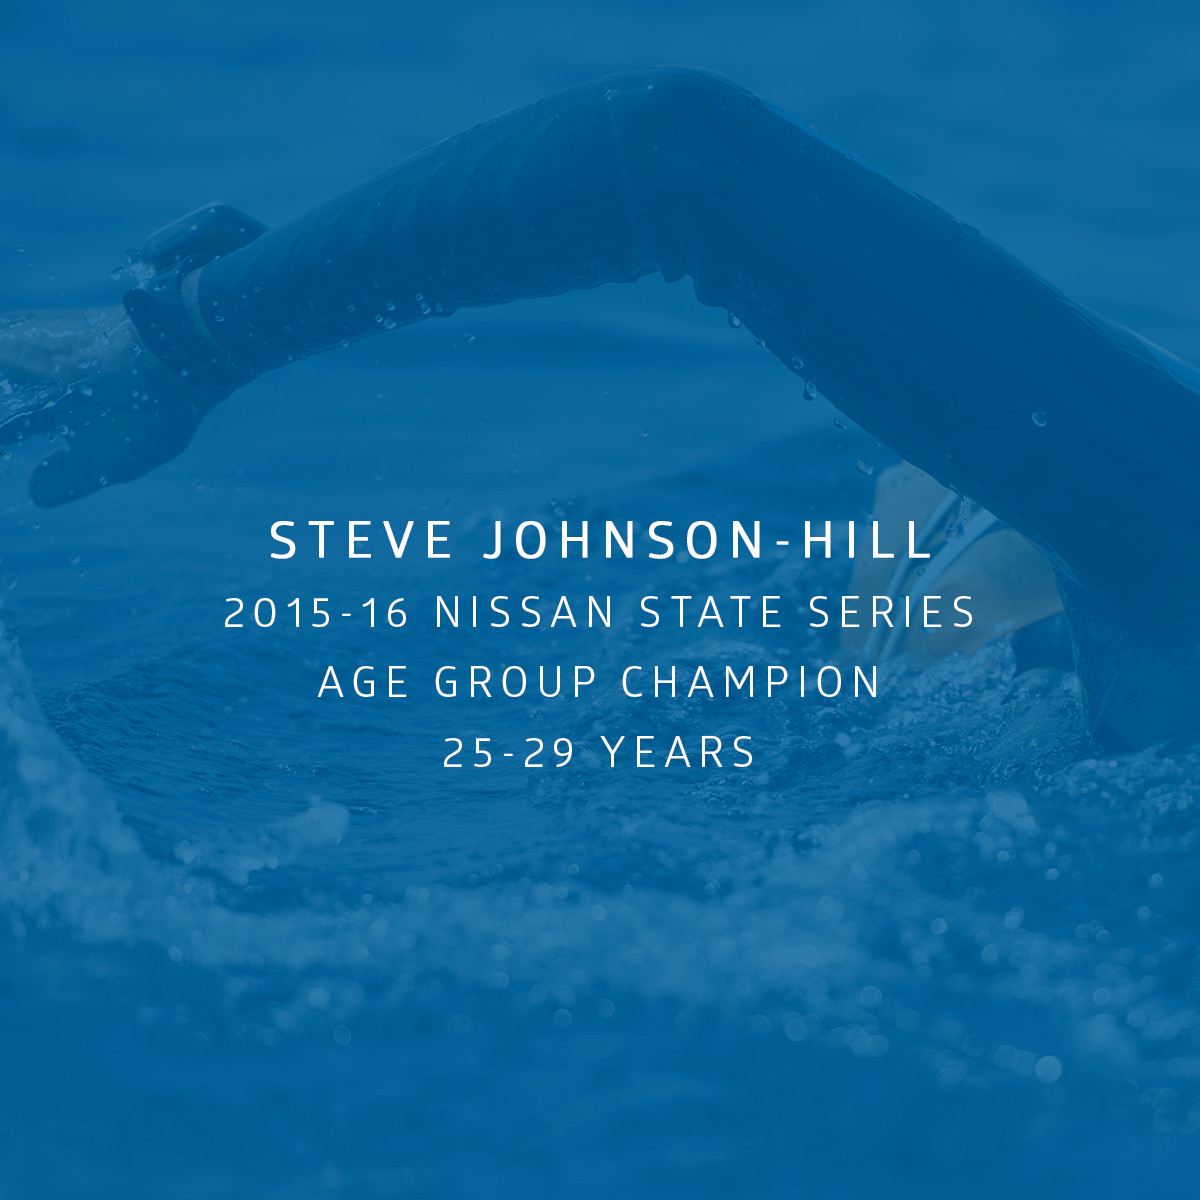 Steve Johnson-Hill